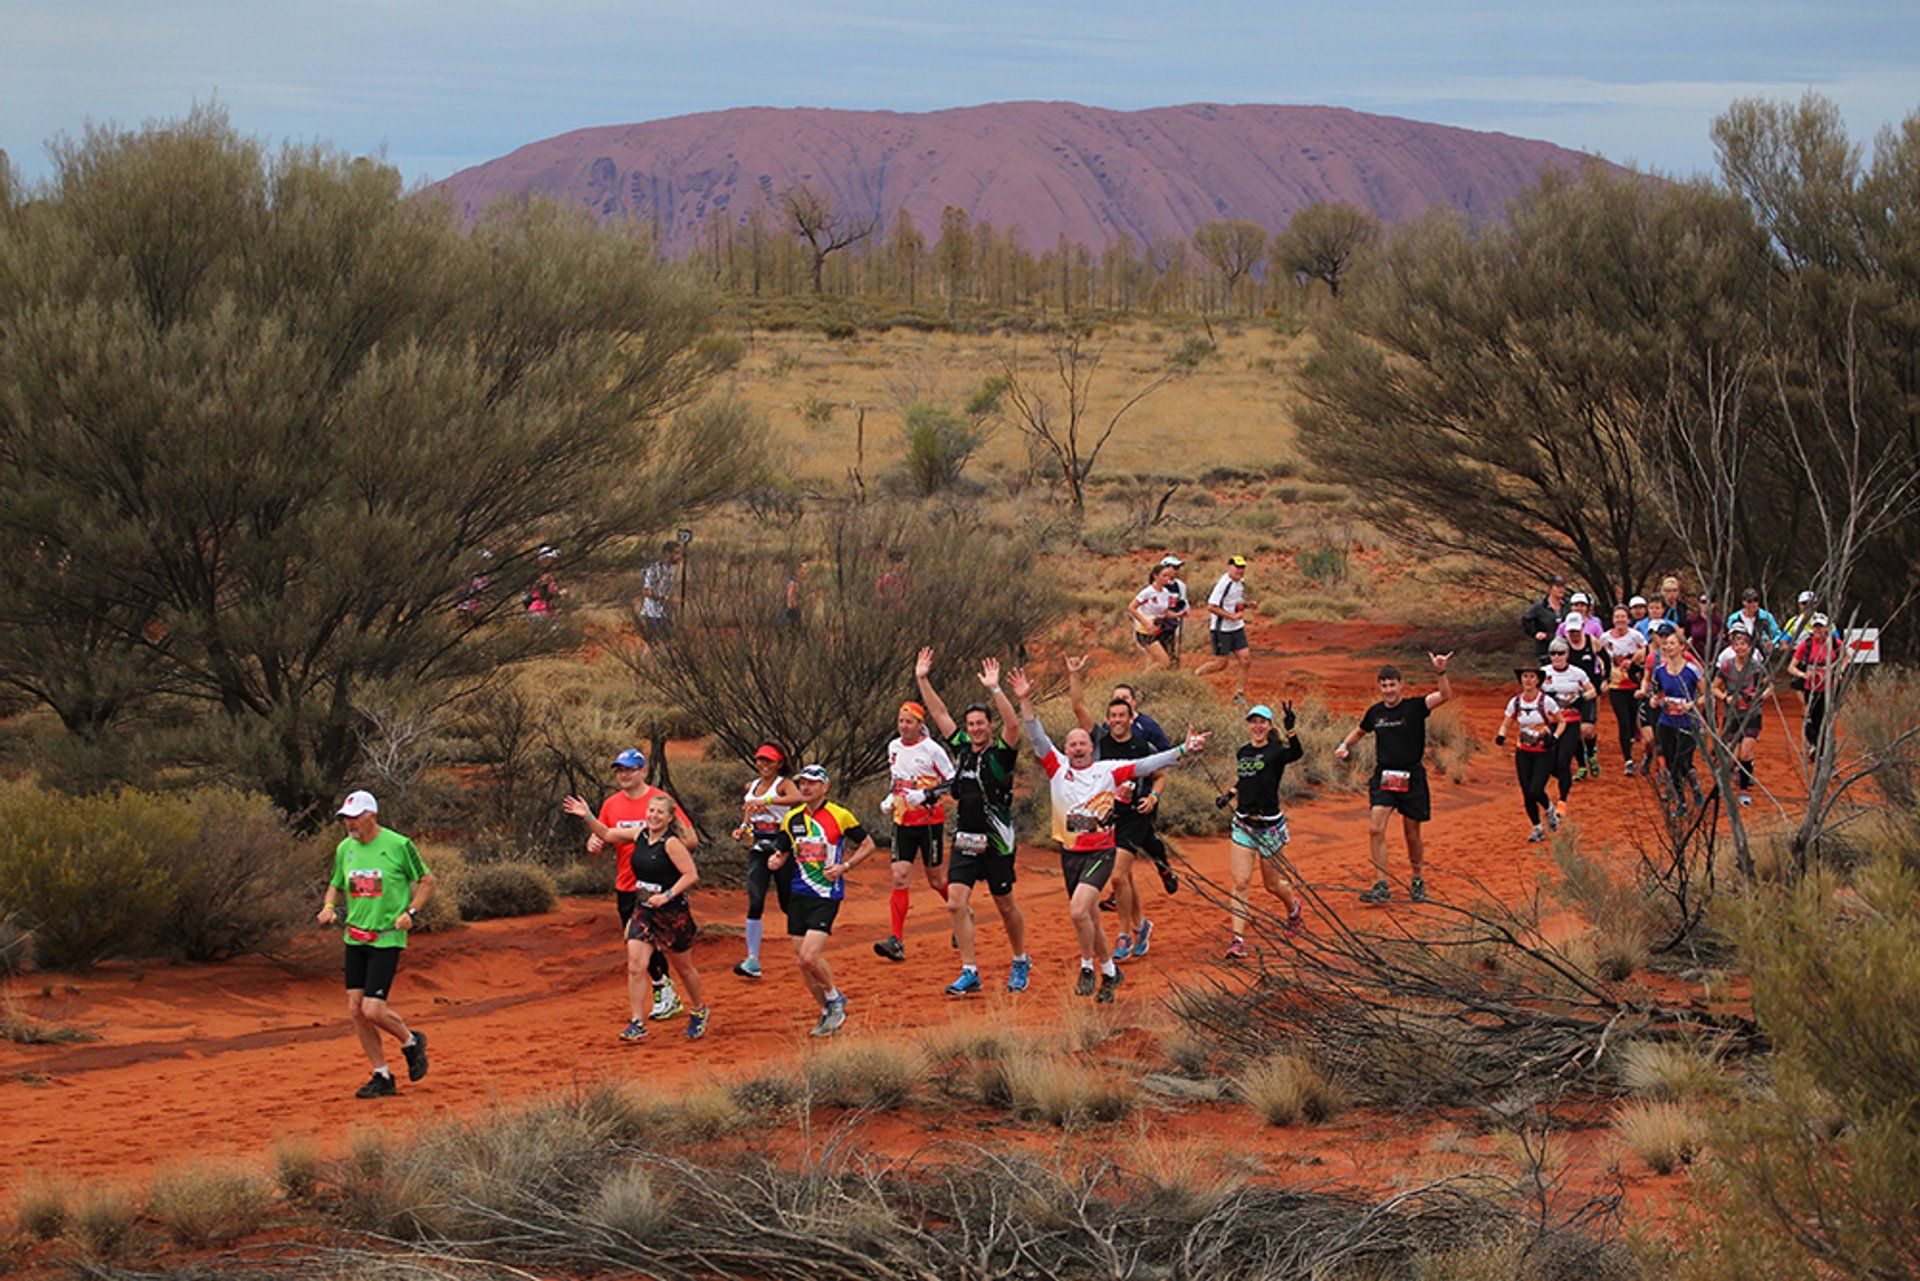 Australian Outback runners